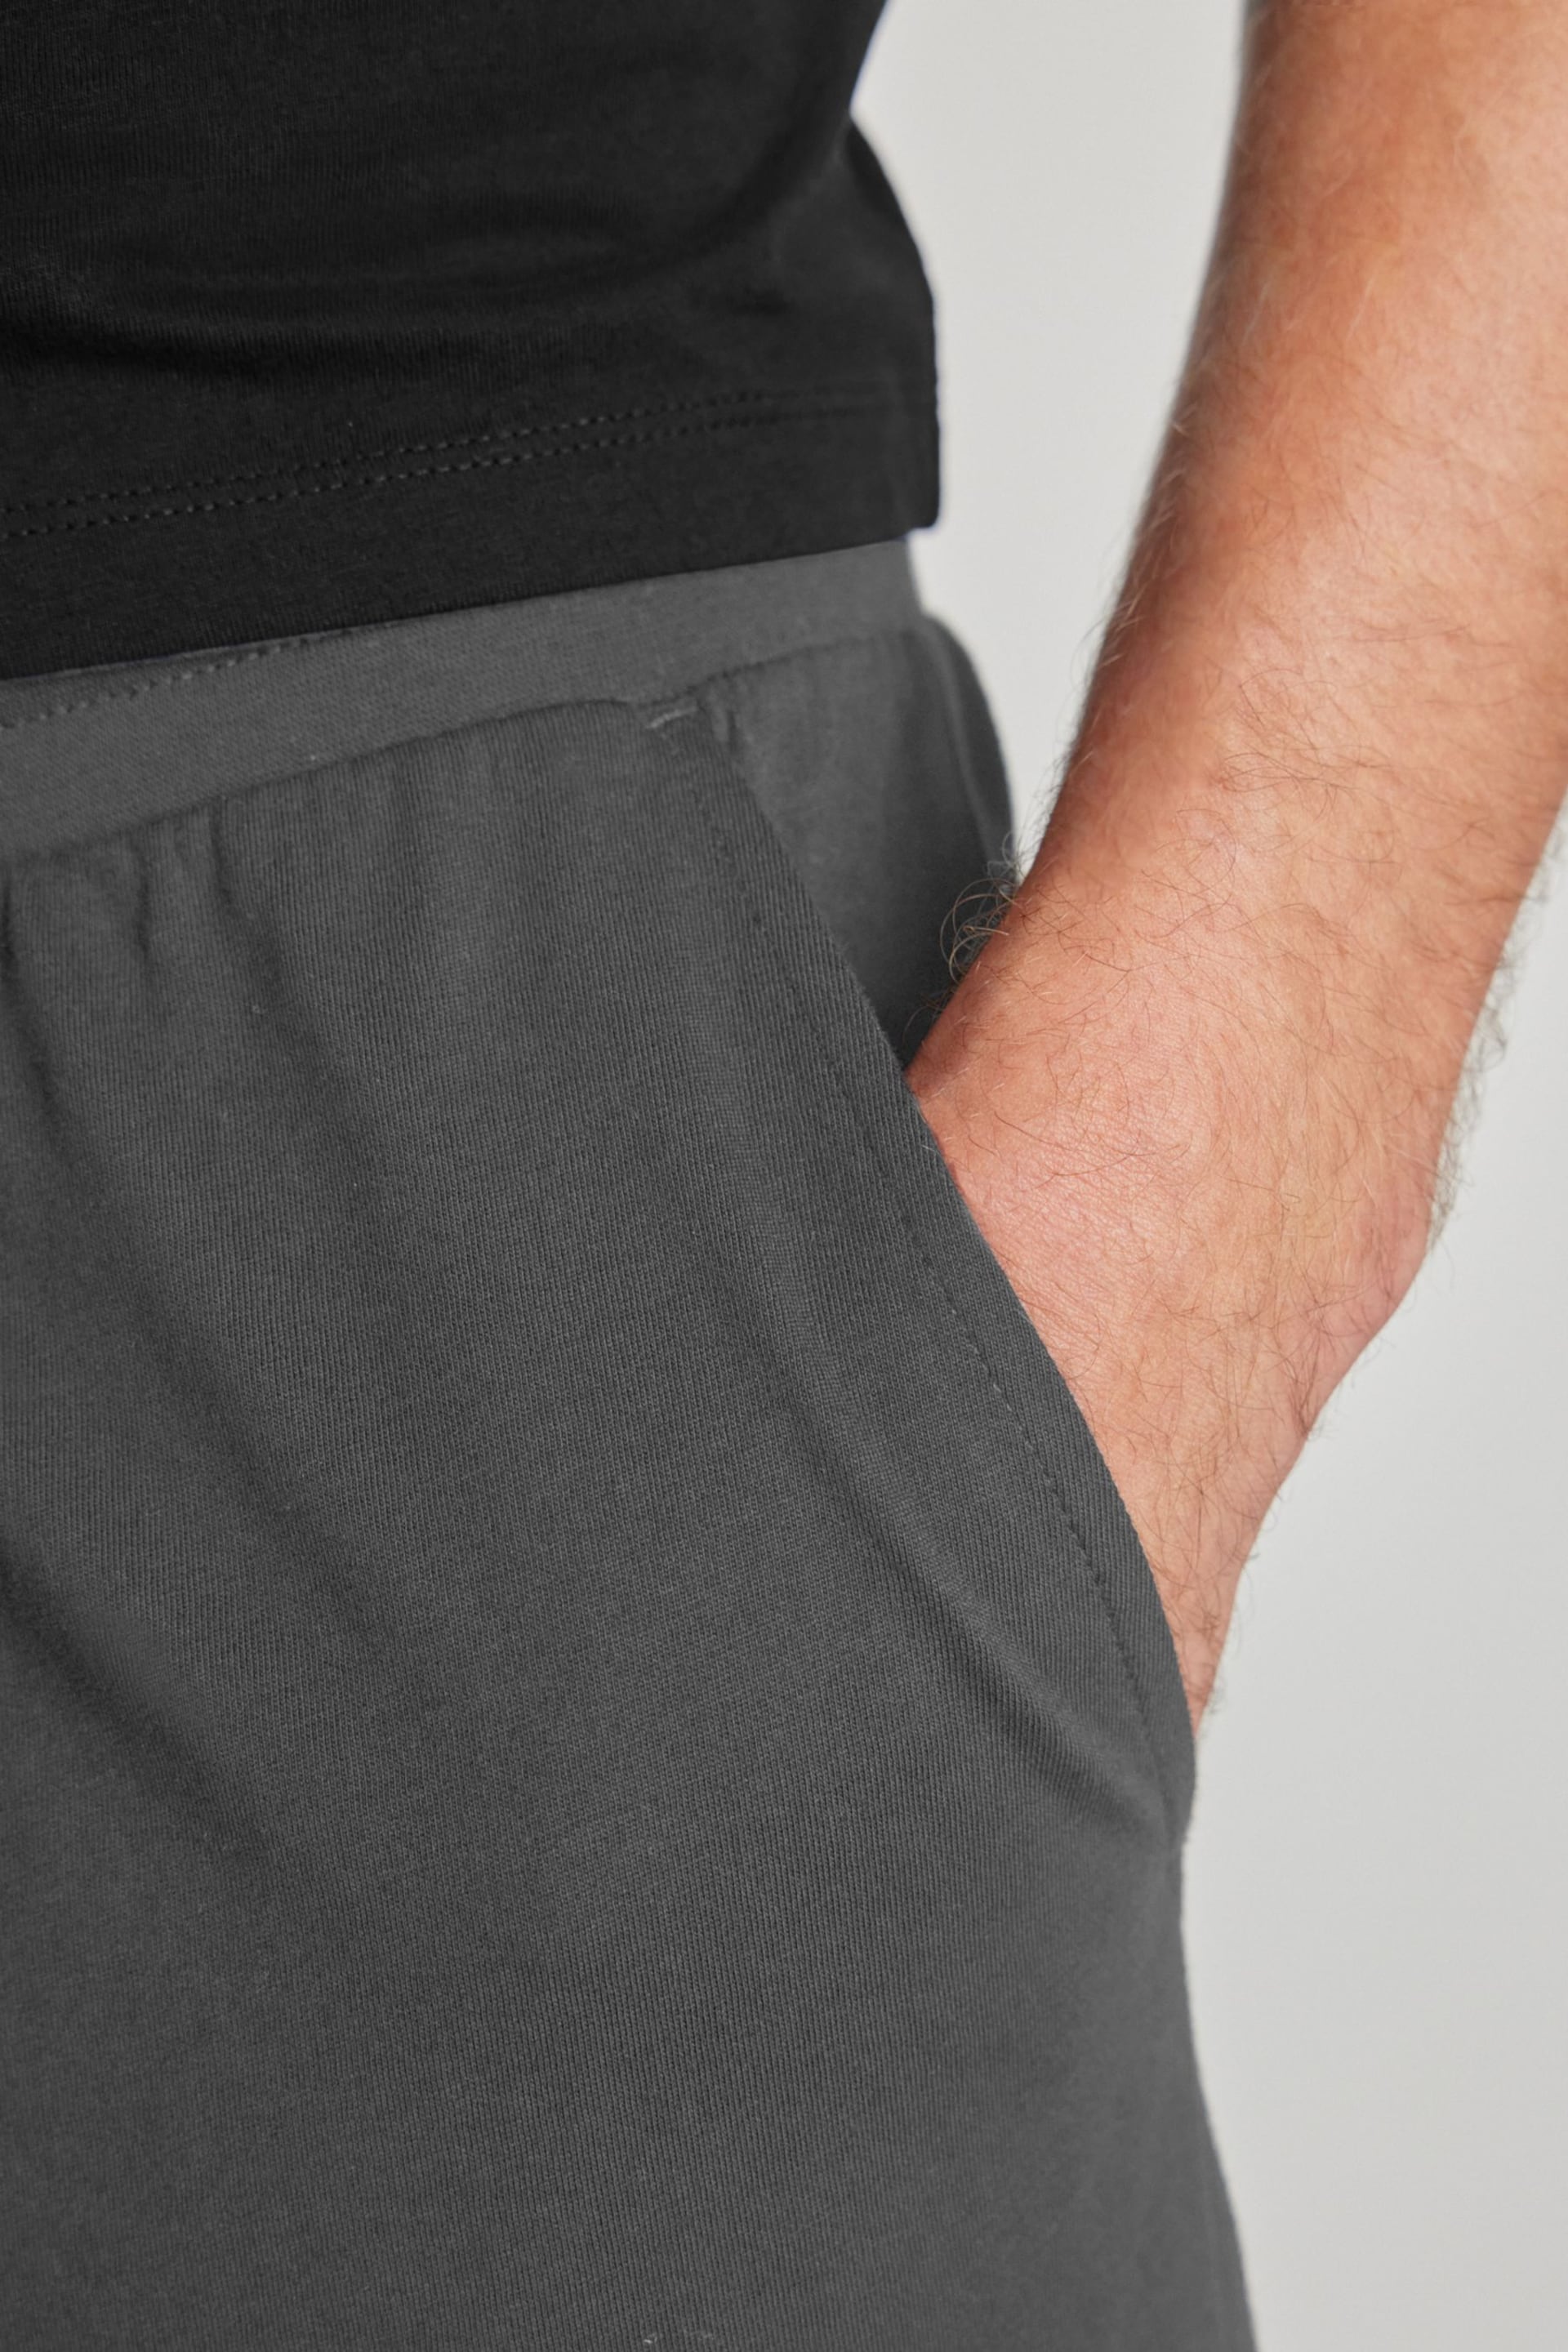 Black/Grey Jersey Pyjama Shorts Set - Image 5 of 8